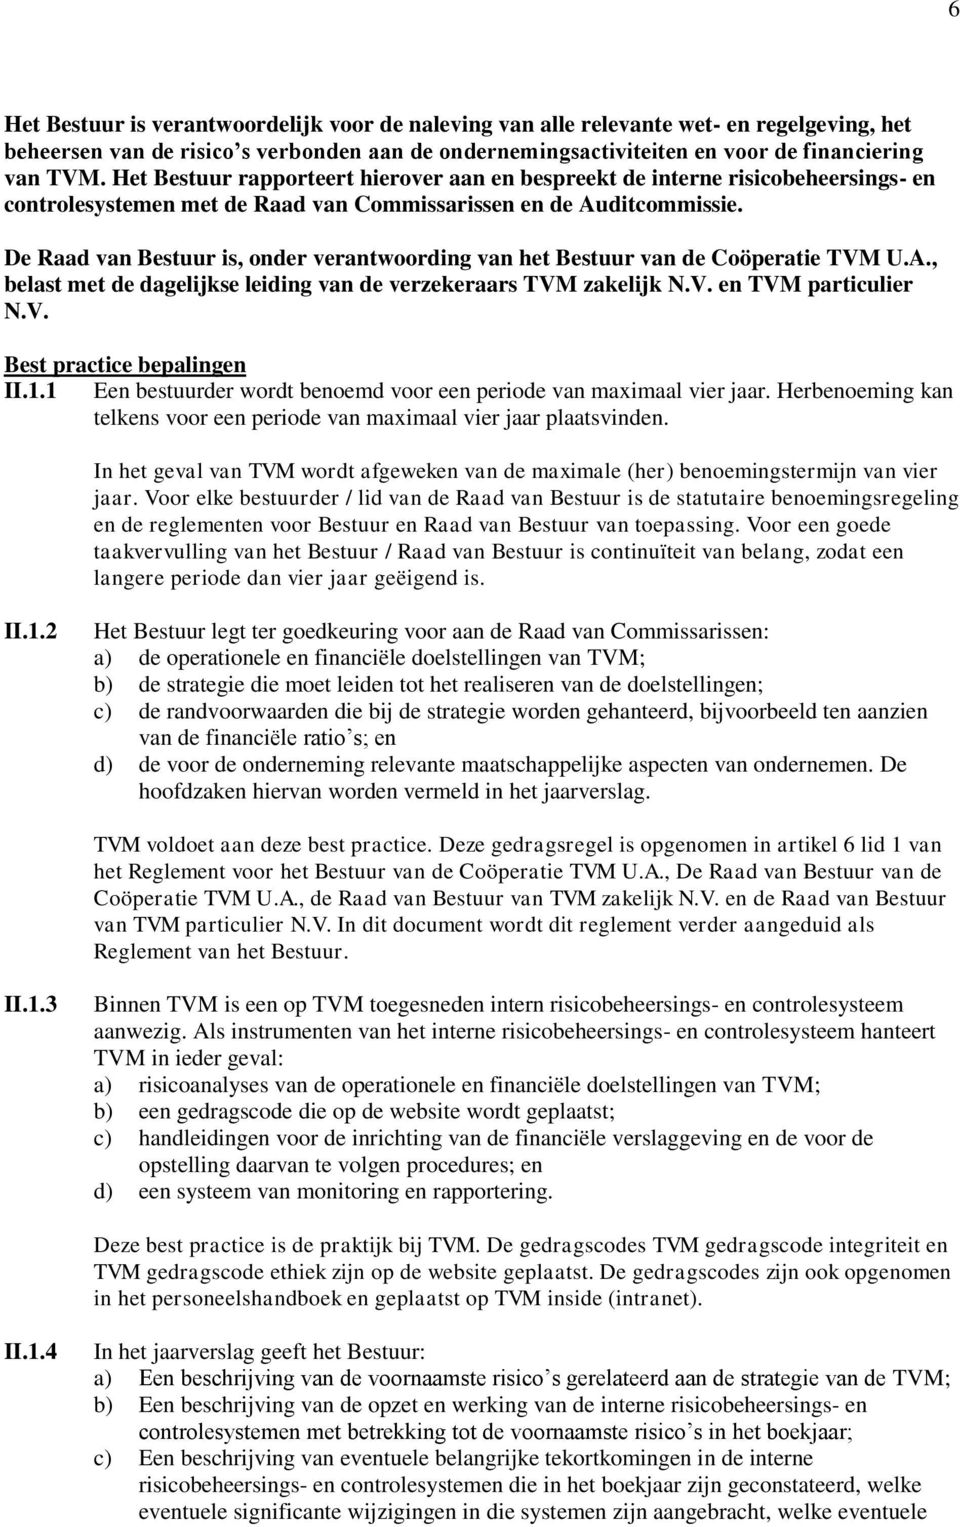 De Raad van Bestuur is, onder verantwoording van het Bestuur van de Coöperatie TVM U.A., belast met de dagelijkse leiding van de verzekeraars TVM zakelijk N.V. en TVM particulier N.V. II.1.